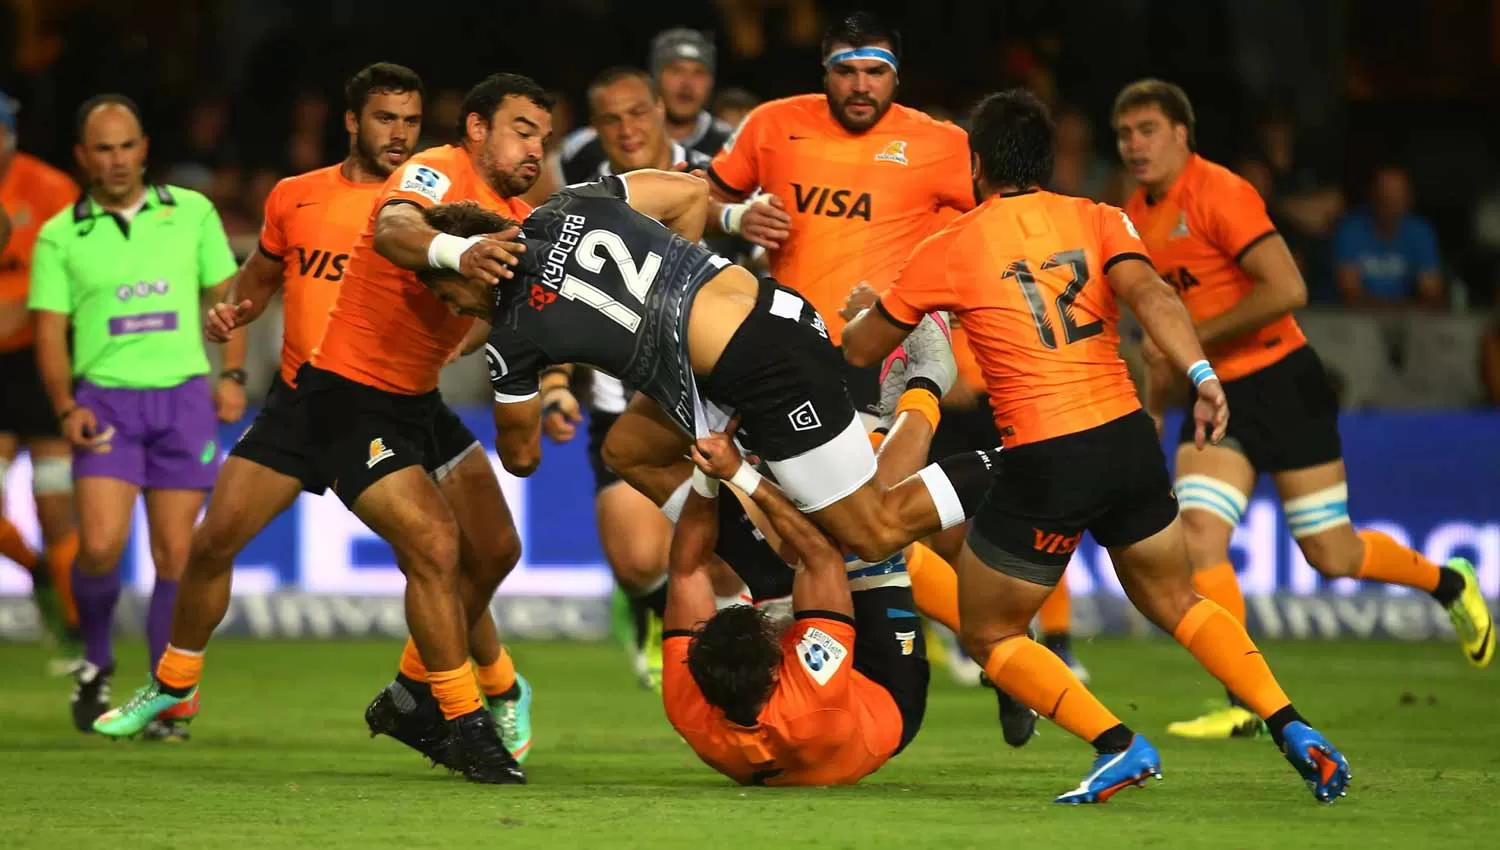 Los Jaguares y Tucumán Rugby animan el sábado: hora, TV y el resto de la agenda deportiva